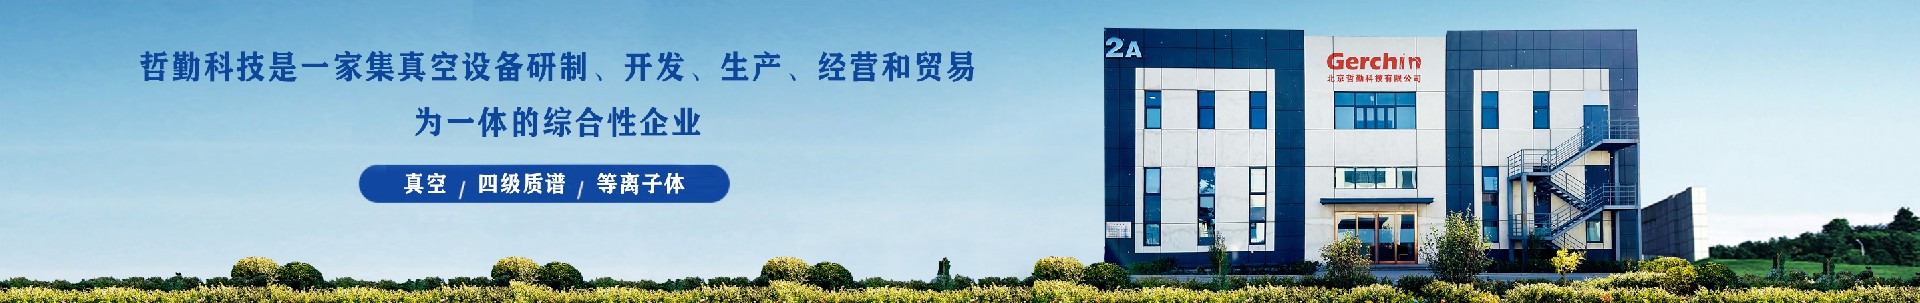 公司荣誉-北京哲勤科技有限公司